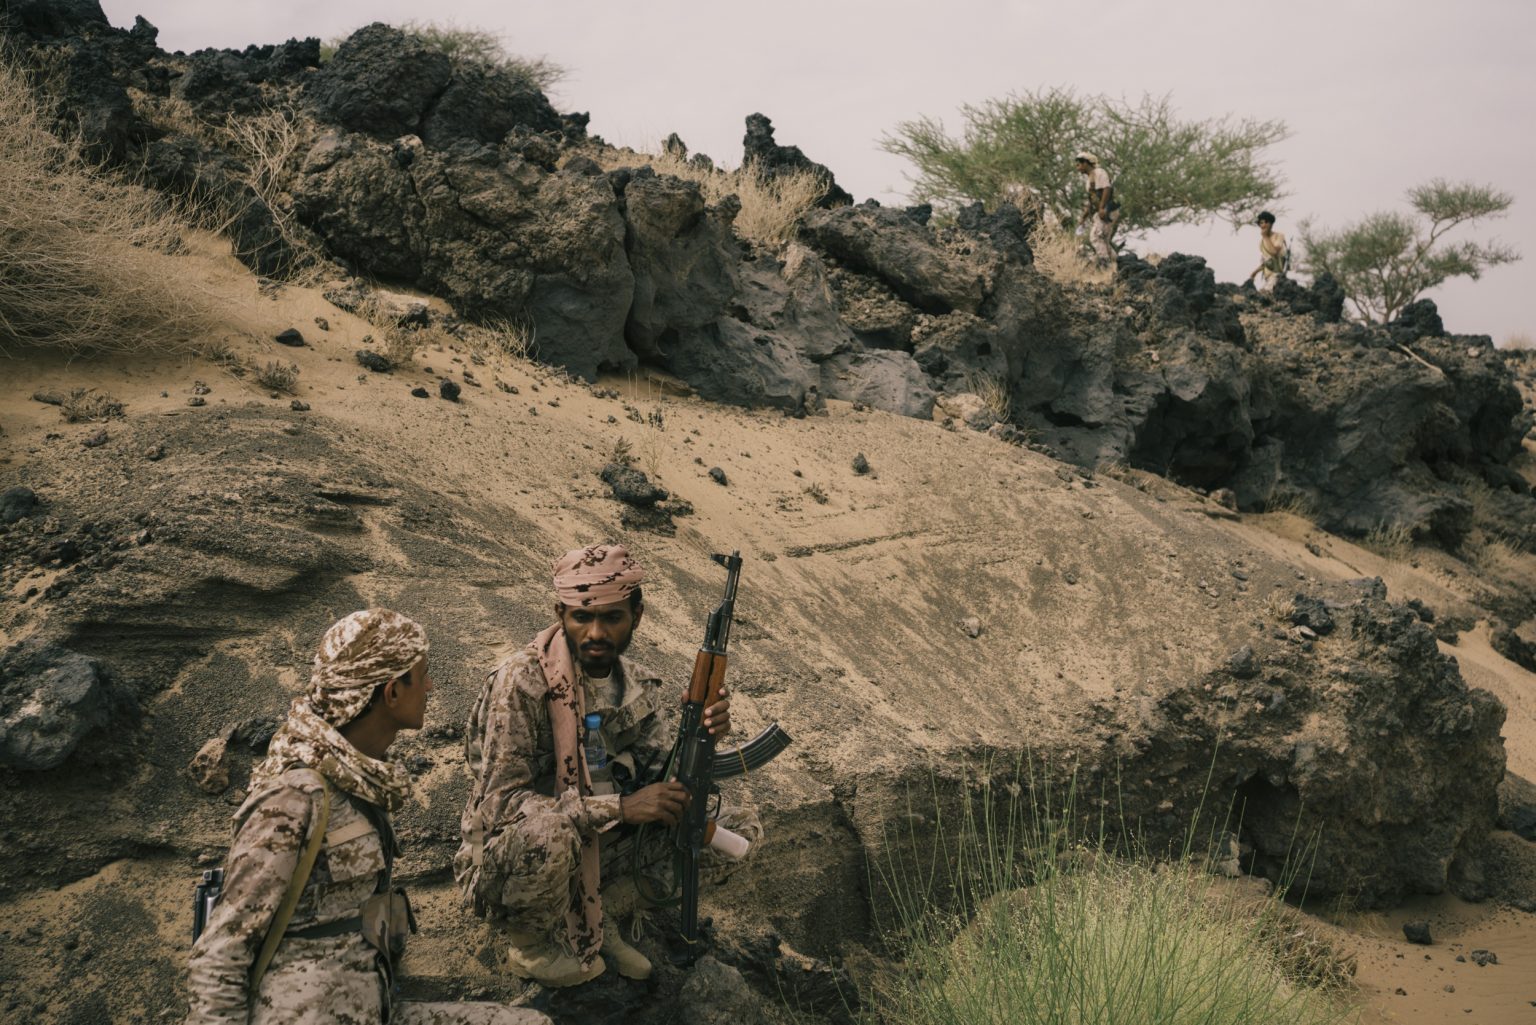 Marib, Yemen, August 2021 - A group of soldiers sits near a frontline position in the West of Marib. In the last months Houthi expanded the area under their control eastward. The city of Marib is now almost encircled by the rebels and it is the last major city center to resist their advance. ><
Marib, Yemen, agosto 2021 - Un gruppo di soldati siede vicino a una posizione di prima linea nell'ovest di Marib. Negli ultimi mesi gli Houthi hanno esteso l'area sotto il loro controllo verso est. La città di Marib è ora quasi circondata dai ribelli ed è l'ultimo grande centro urbano a resistere alla loro avanzata.